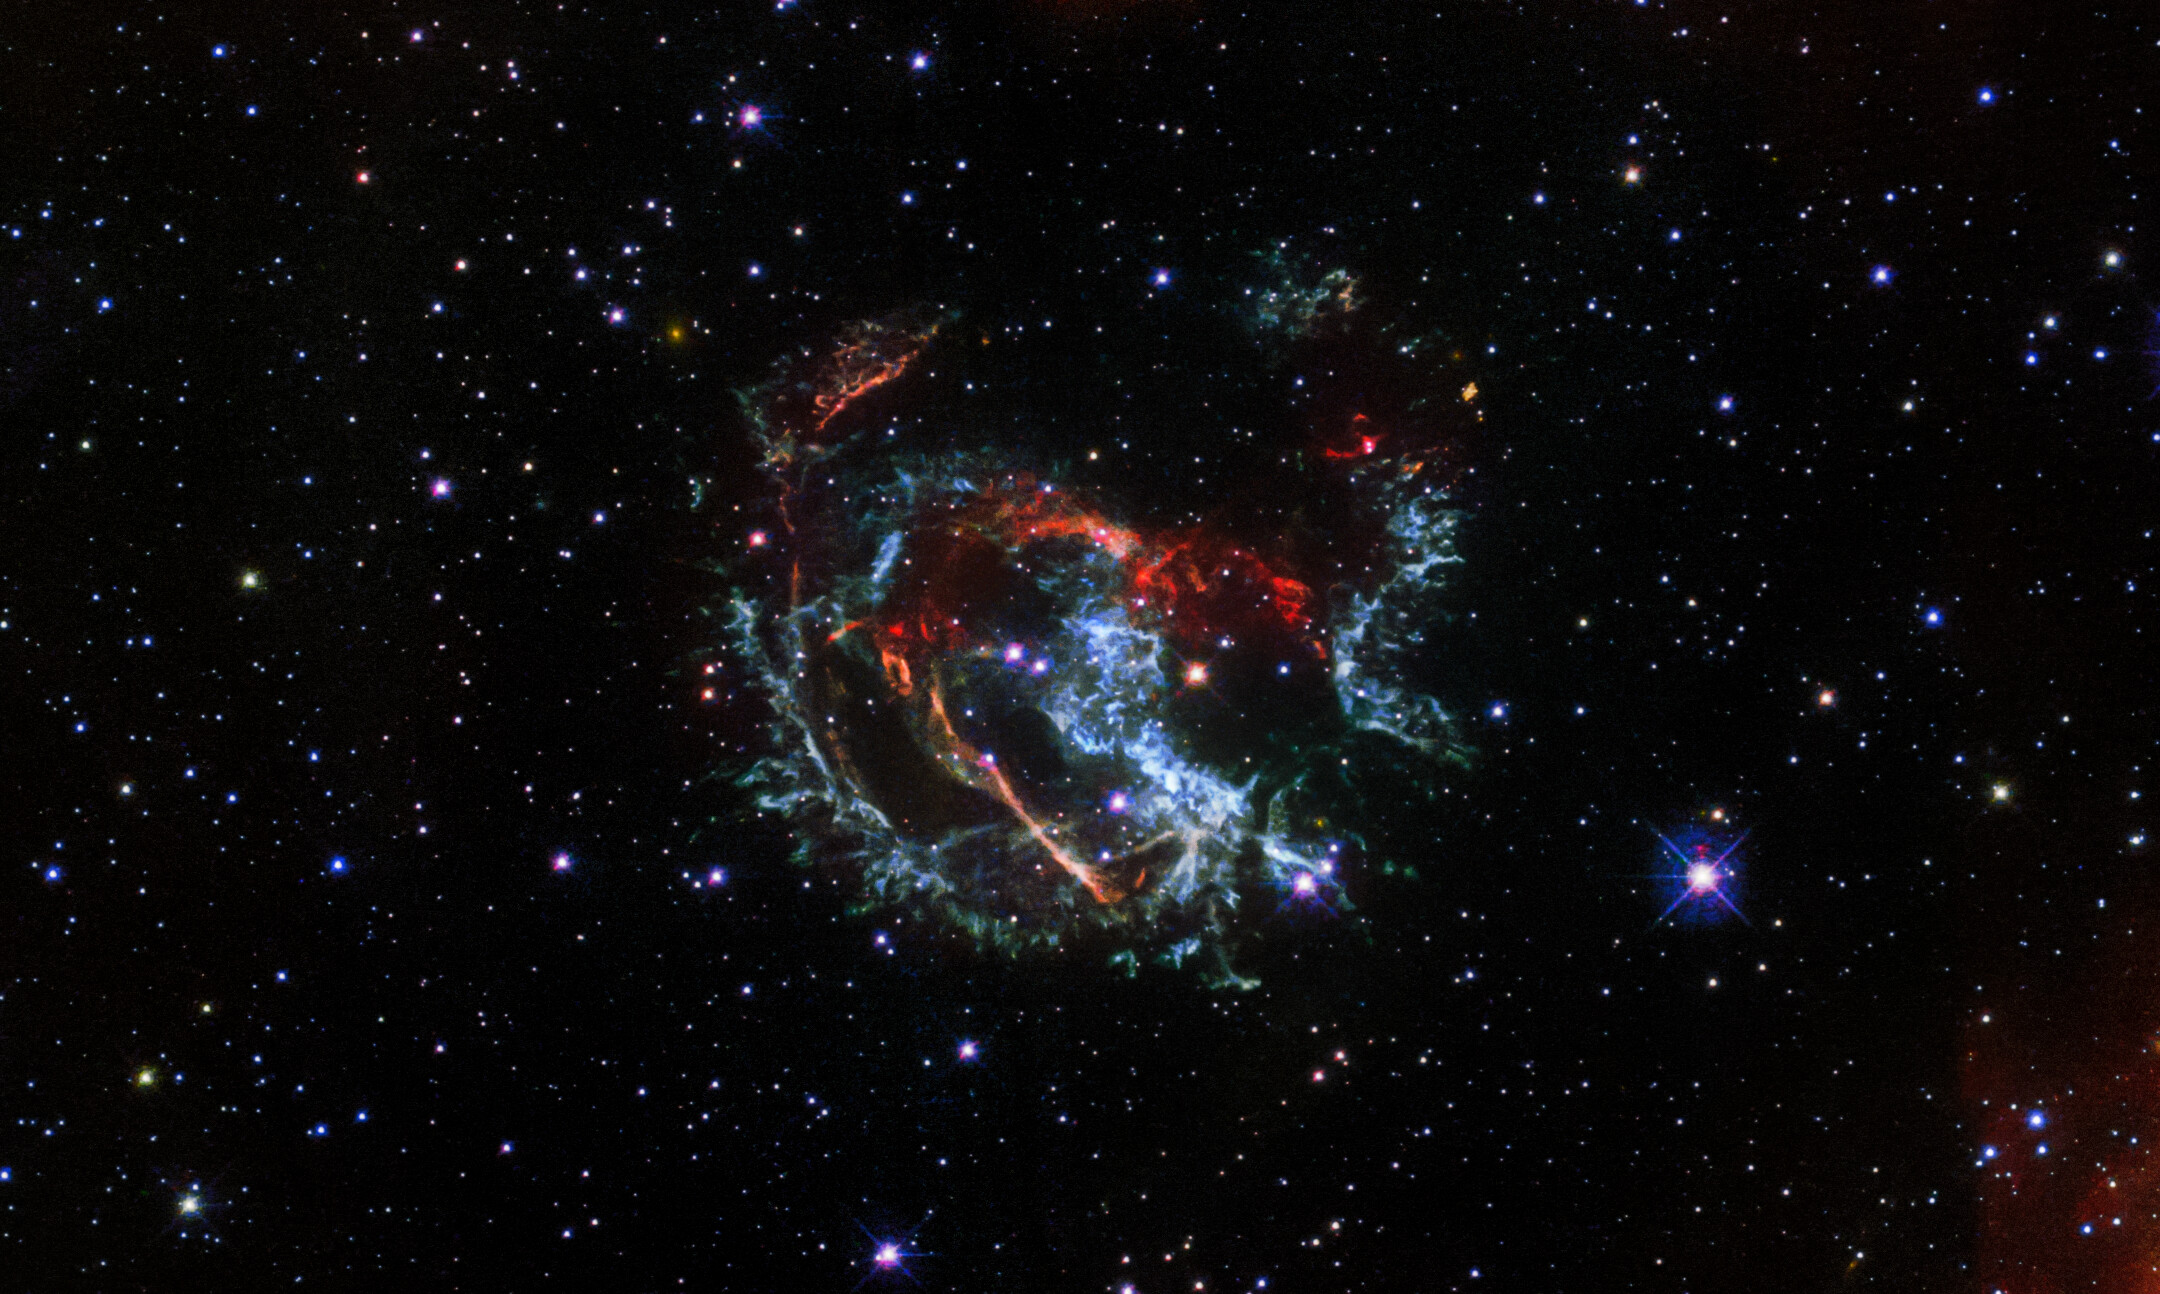 Январь проиллюстрирован этим изображением остатка сверхновой 1E 0102.2-7219, находящегося в 200 000 световых лет от нас. Предоставлено: НАСА, Европейское космическое агентство, Дж. Бановец и Д. Милисавлевич (Университет Пердью).